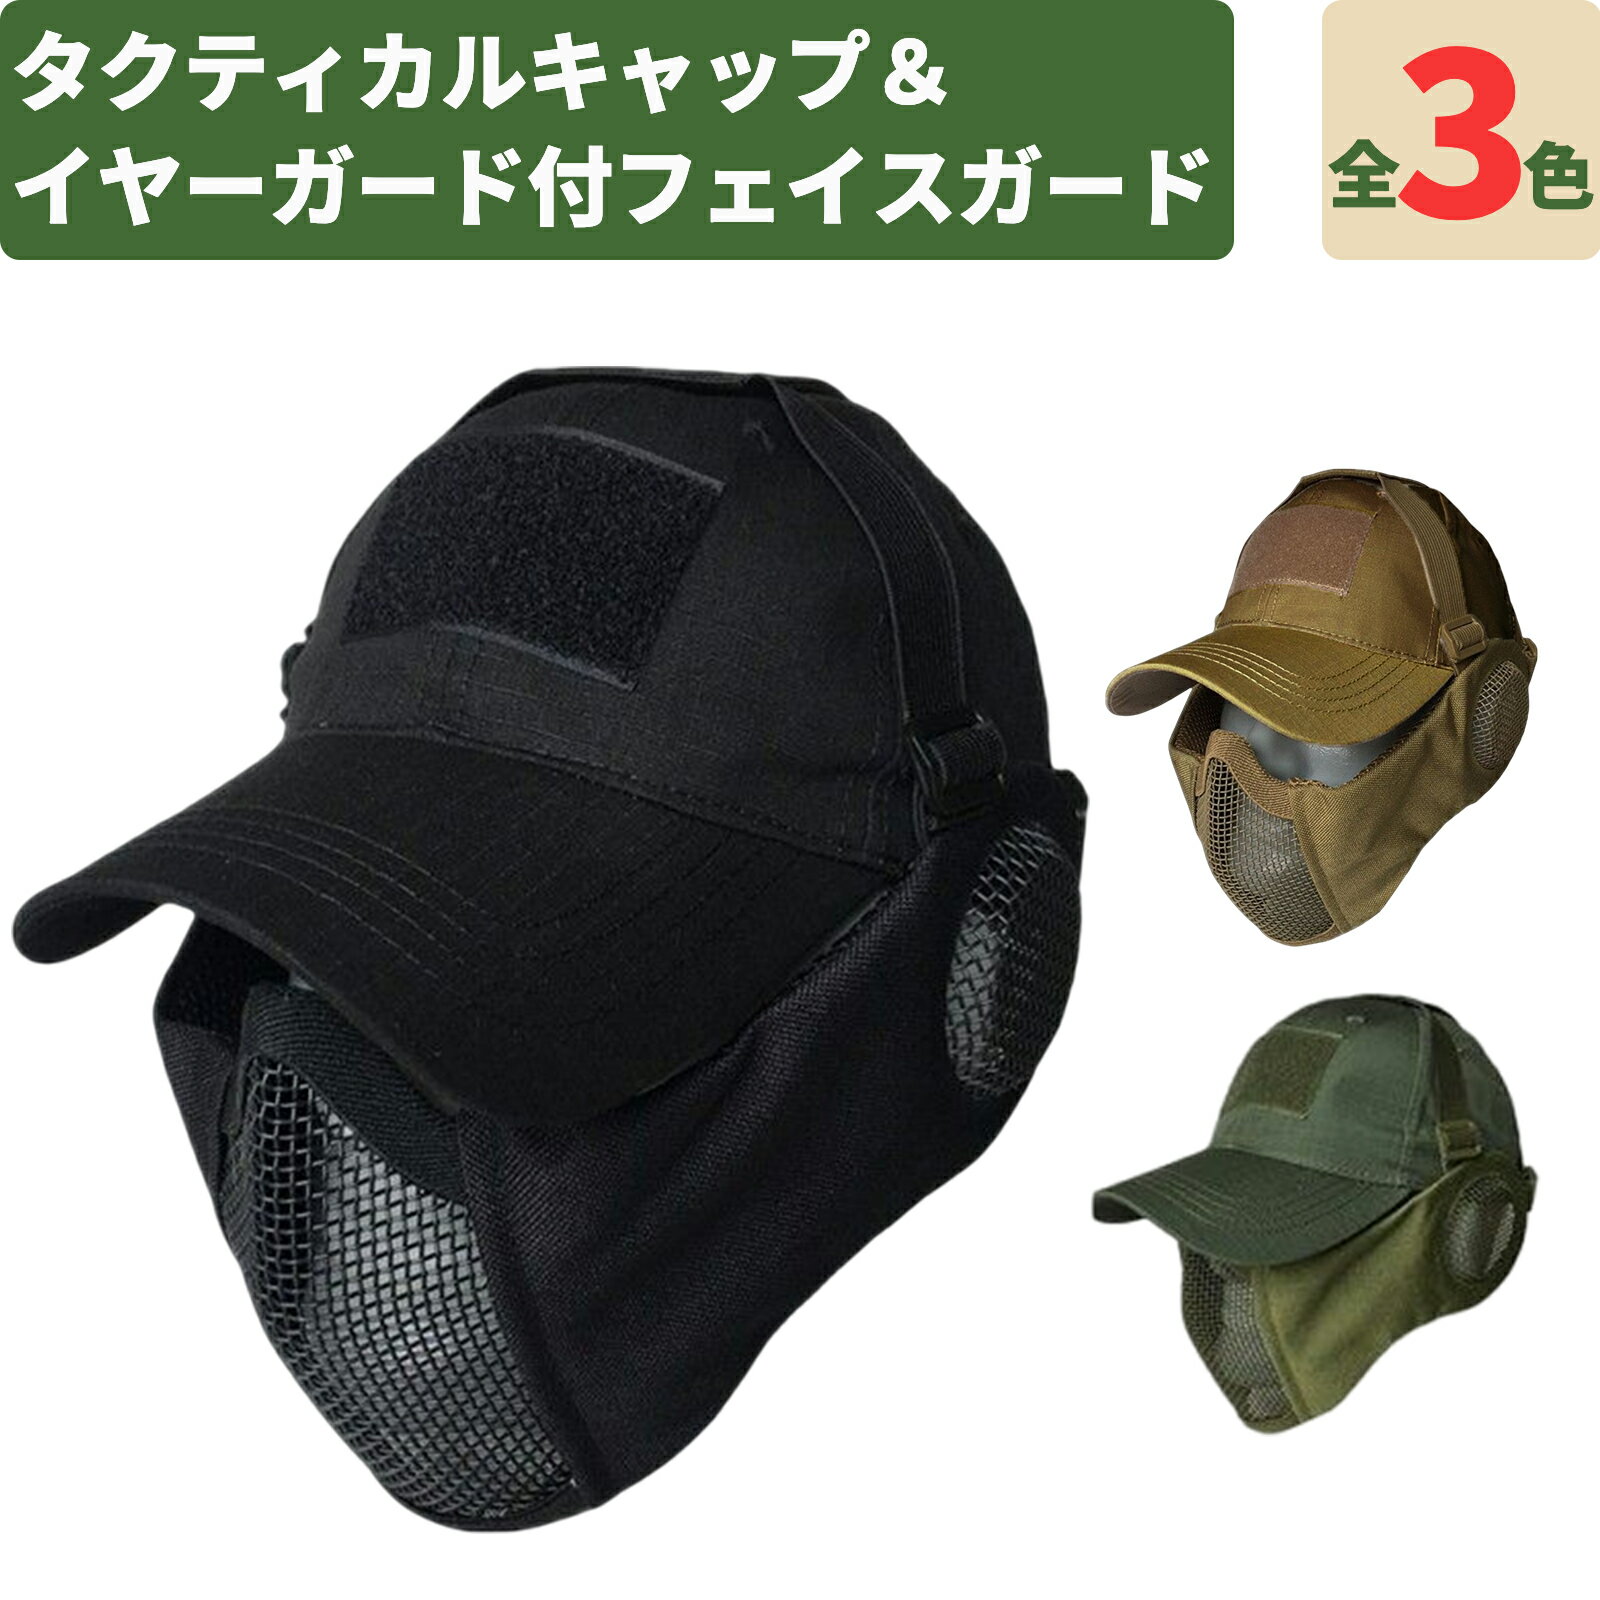 サバゲー用 タクティカルキャップ ＆ イヤーガード付きフェイスガード セット サバイバルゲーム用 耳保護付きマスク 装備 1